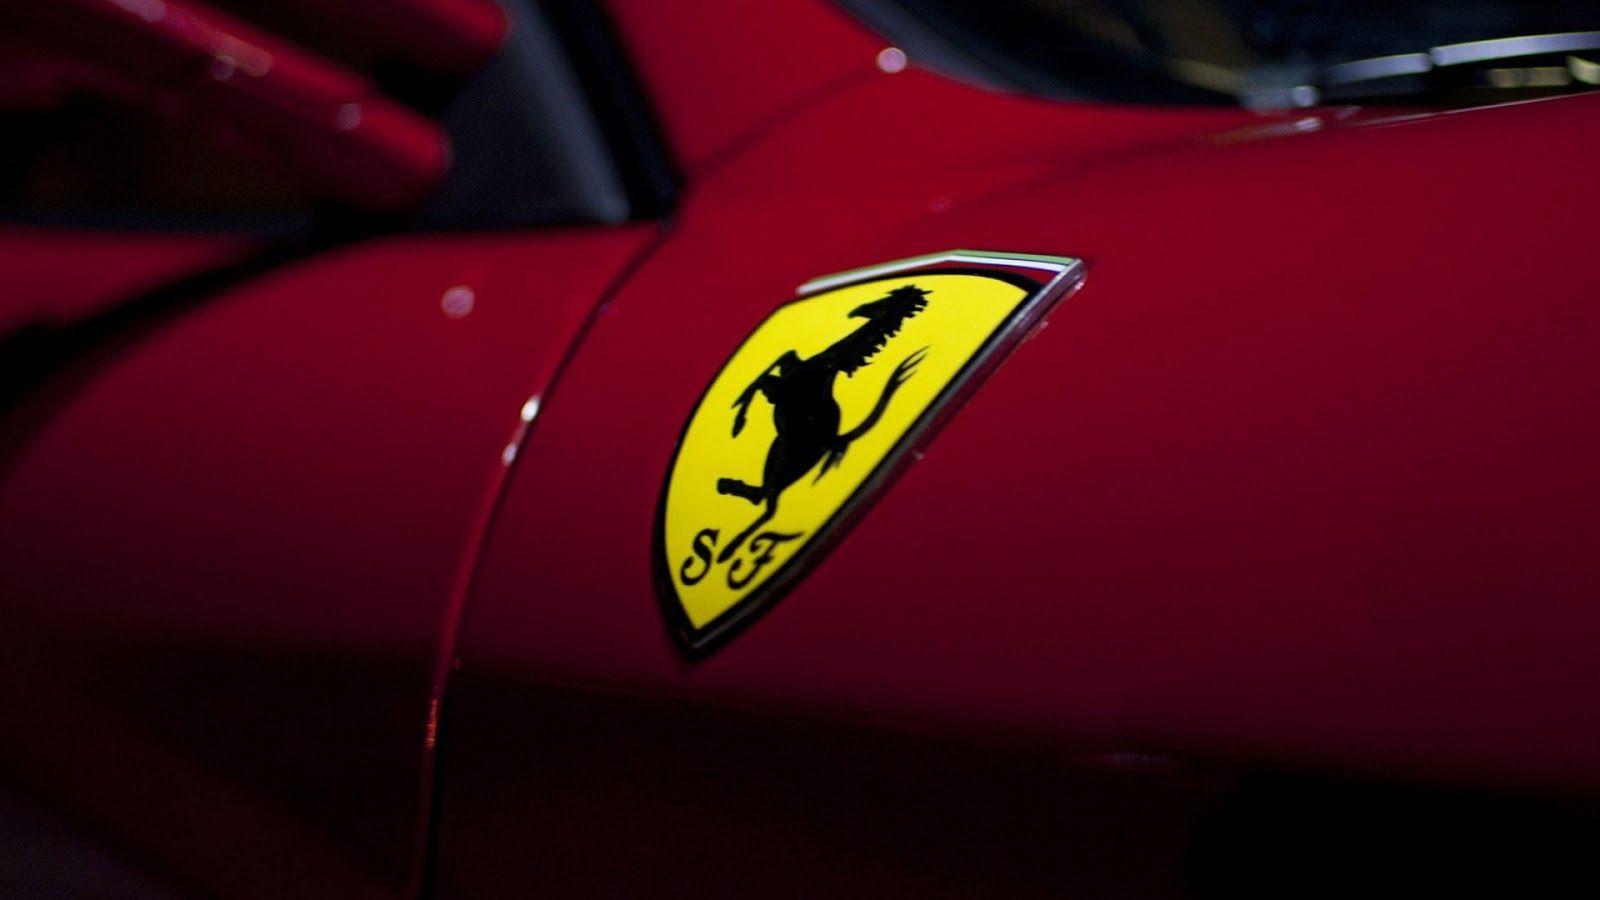 Ferrari Wallpaper Logo Mobile. Vehicles Wallpaper